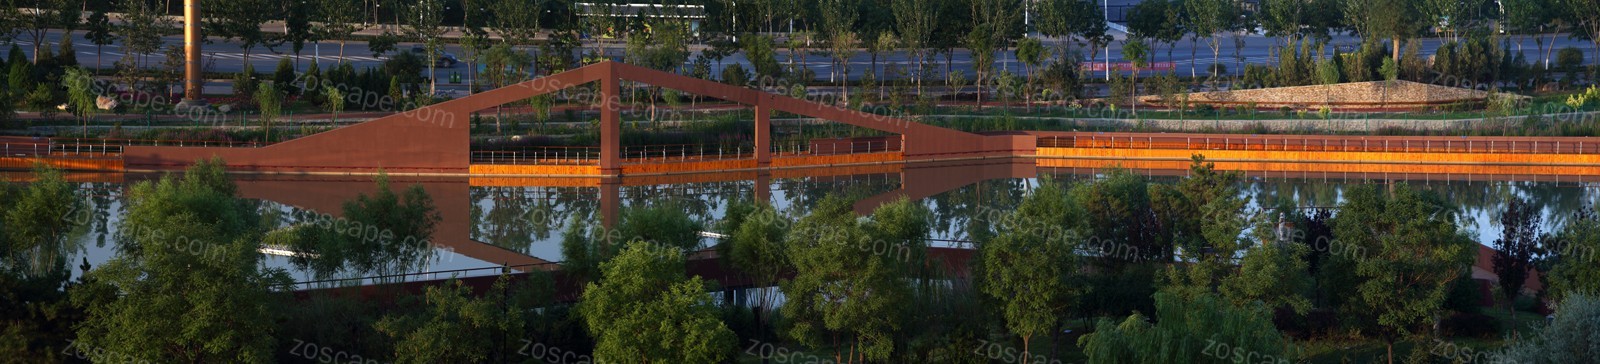 河岸滨水公园创意景观廊桥设计意向图